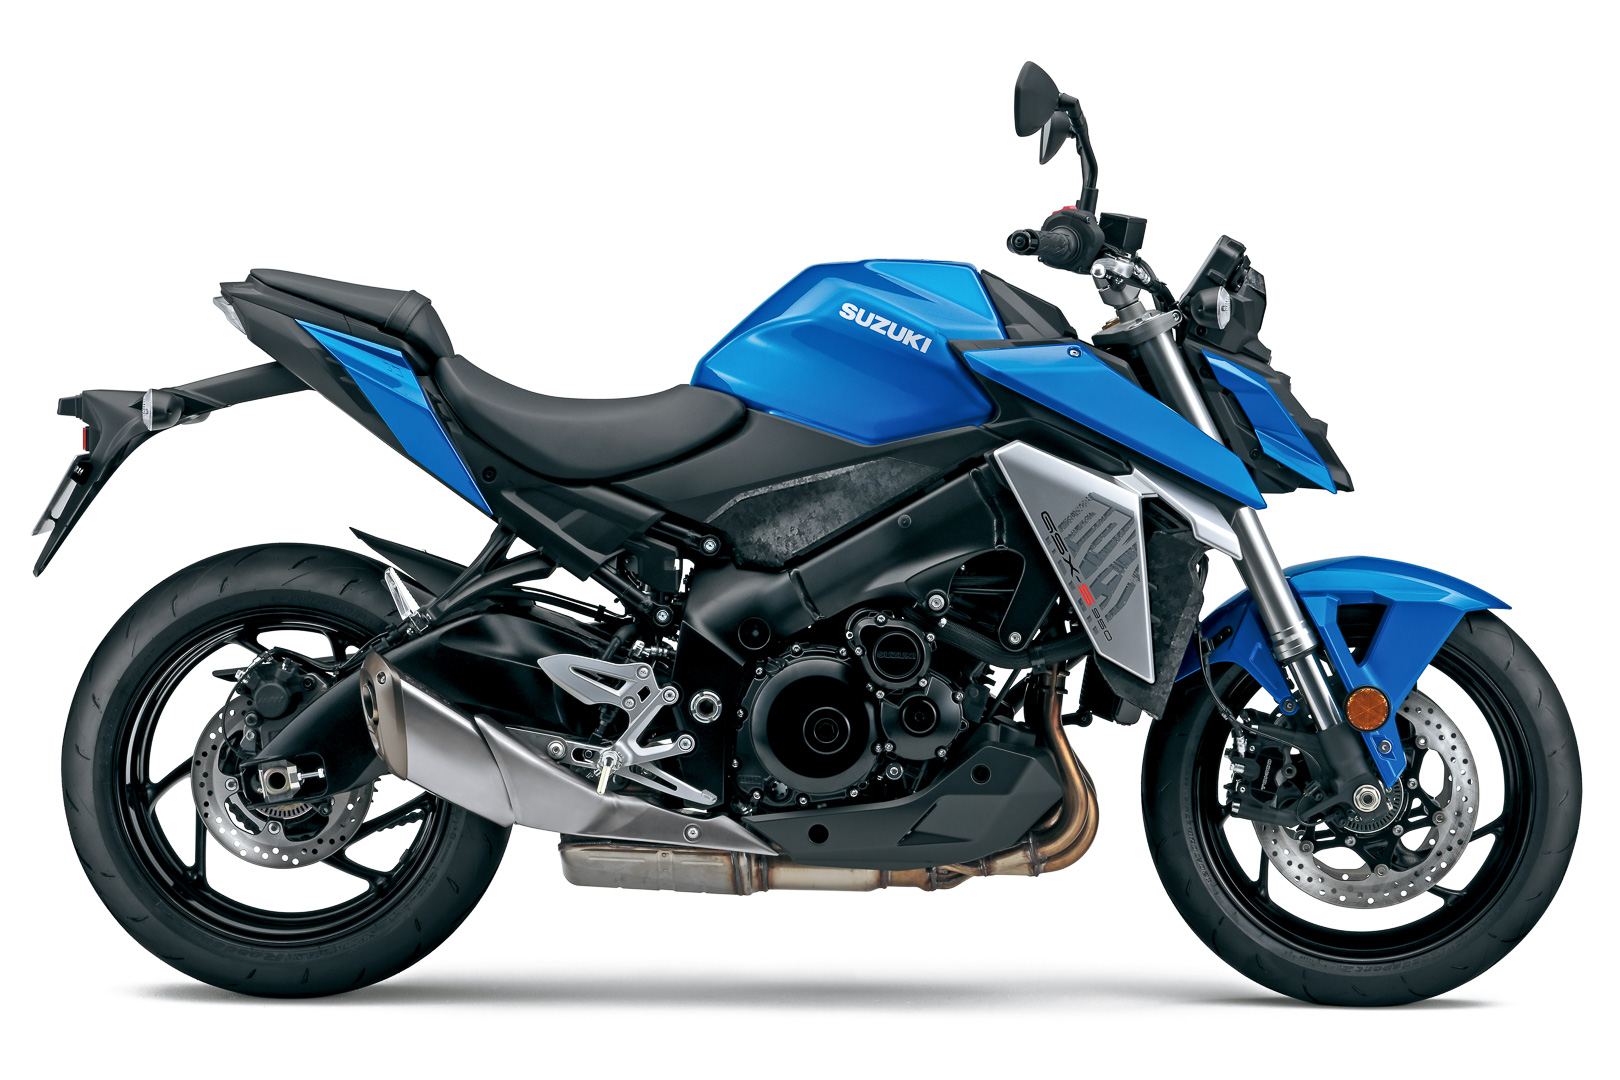 2022 suzuki gsx s950 first look sport motorcycle 2